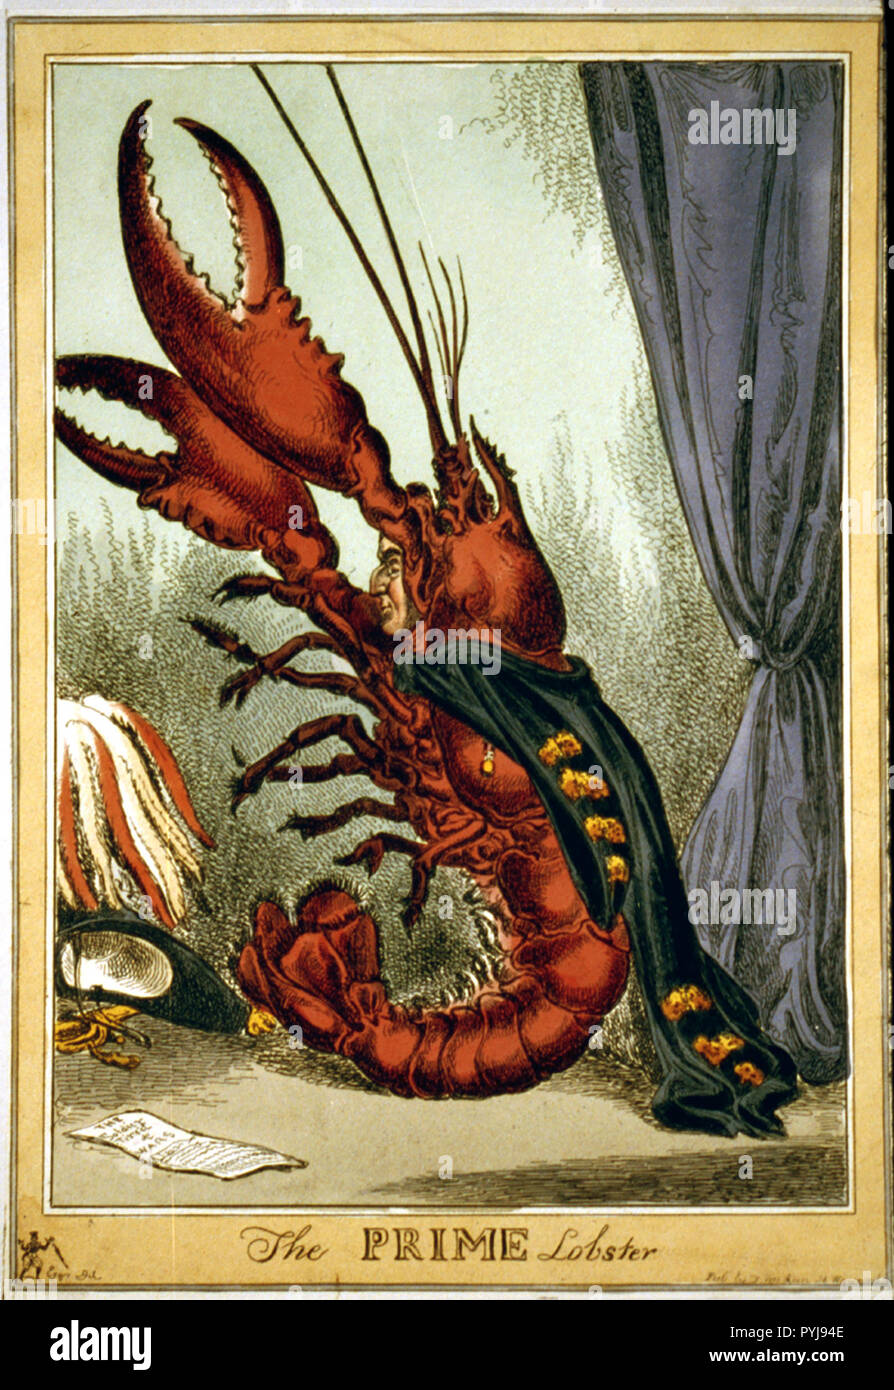 Wellington comme un homard géant, son profil entre les griffes de la  créature soulevées, se dresse sur la partie inférieure de la queue des  joints ; de son dos pend un chancelier